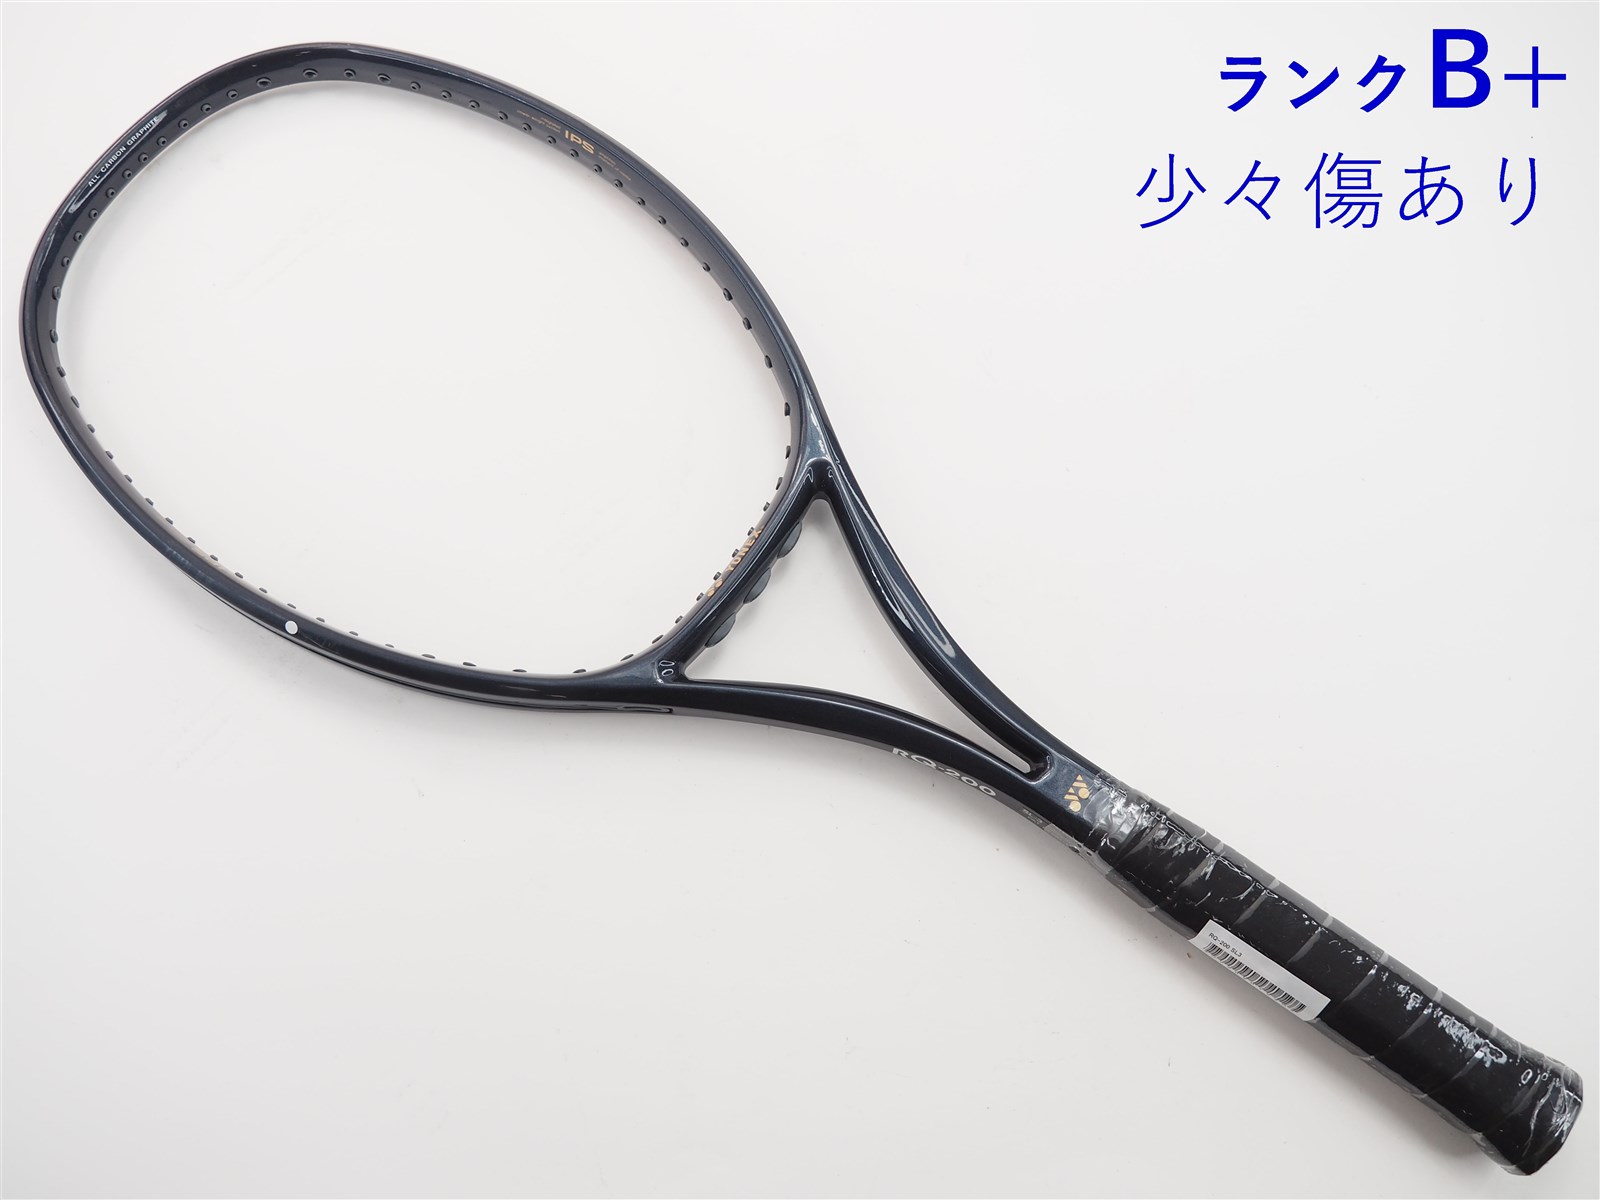 中古】ヨネックス RQ-200YONEX RQ-200(SL3)【中古 テニスラケット】【送料無料】の通販・販売| ヨネックス| テニス サポートセンターへ